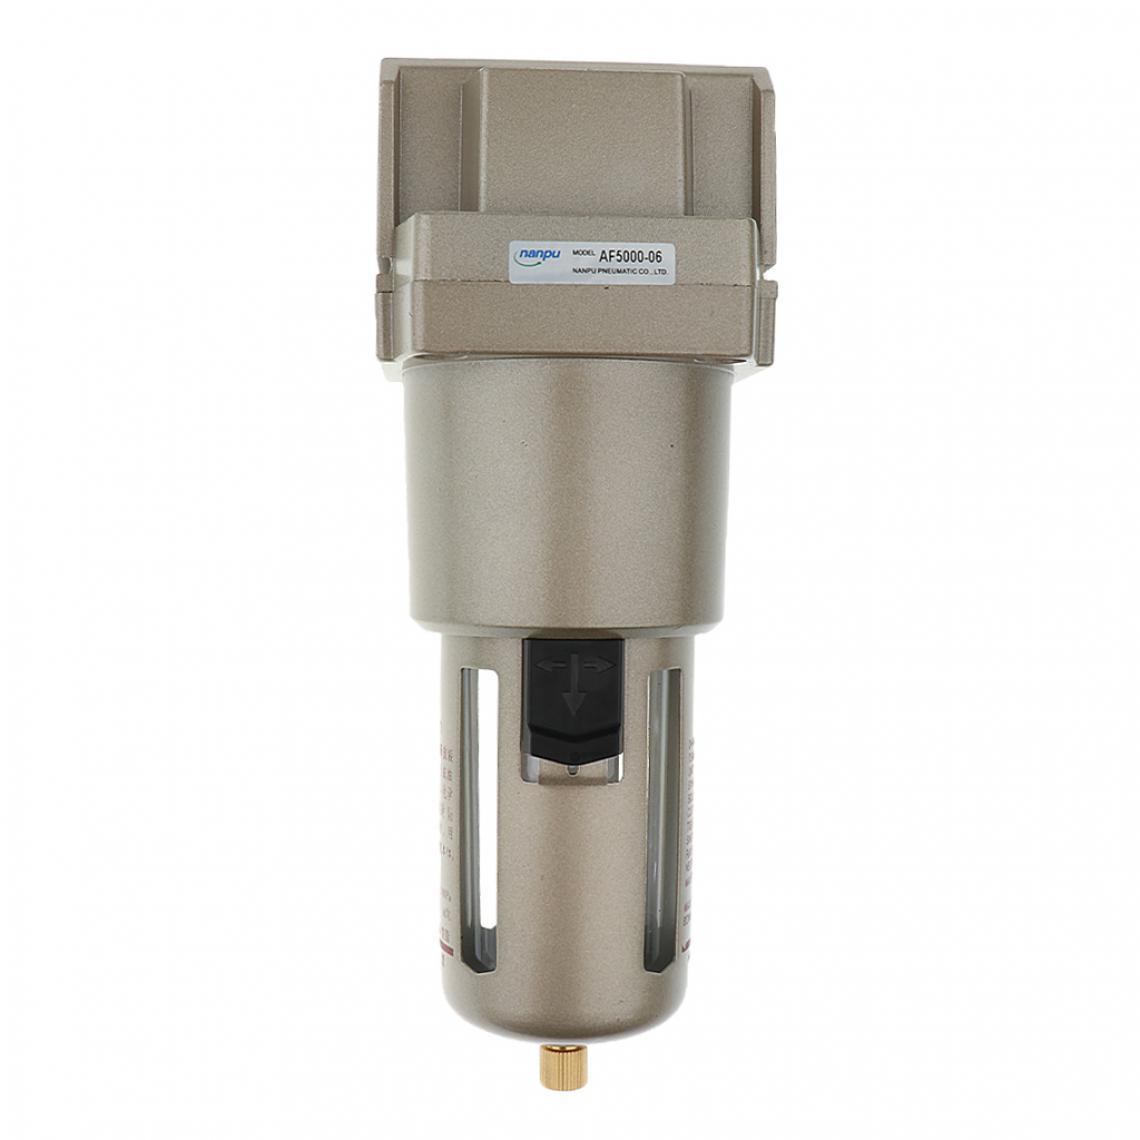 marque generique - Af5000-06 3/4 filtre à air particulaire filtre à eau purificateur d'eau - Flexible gaz